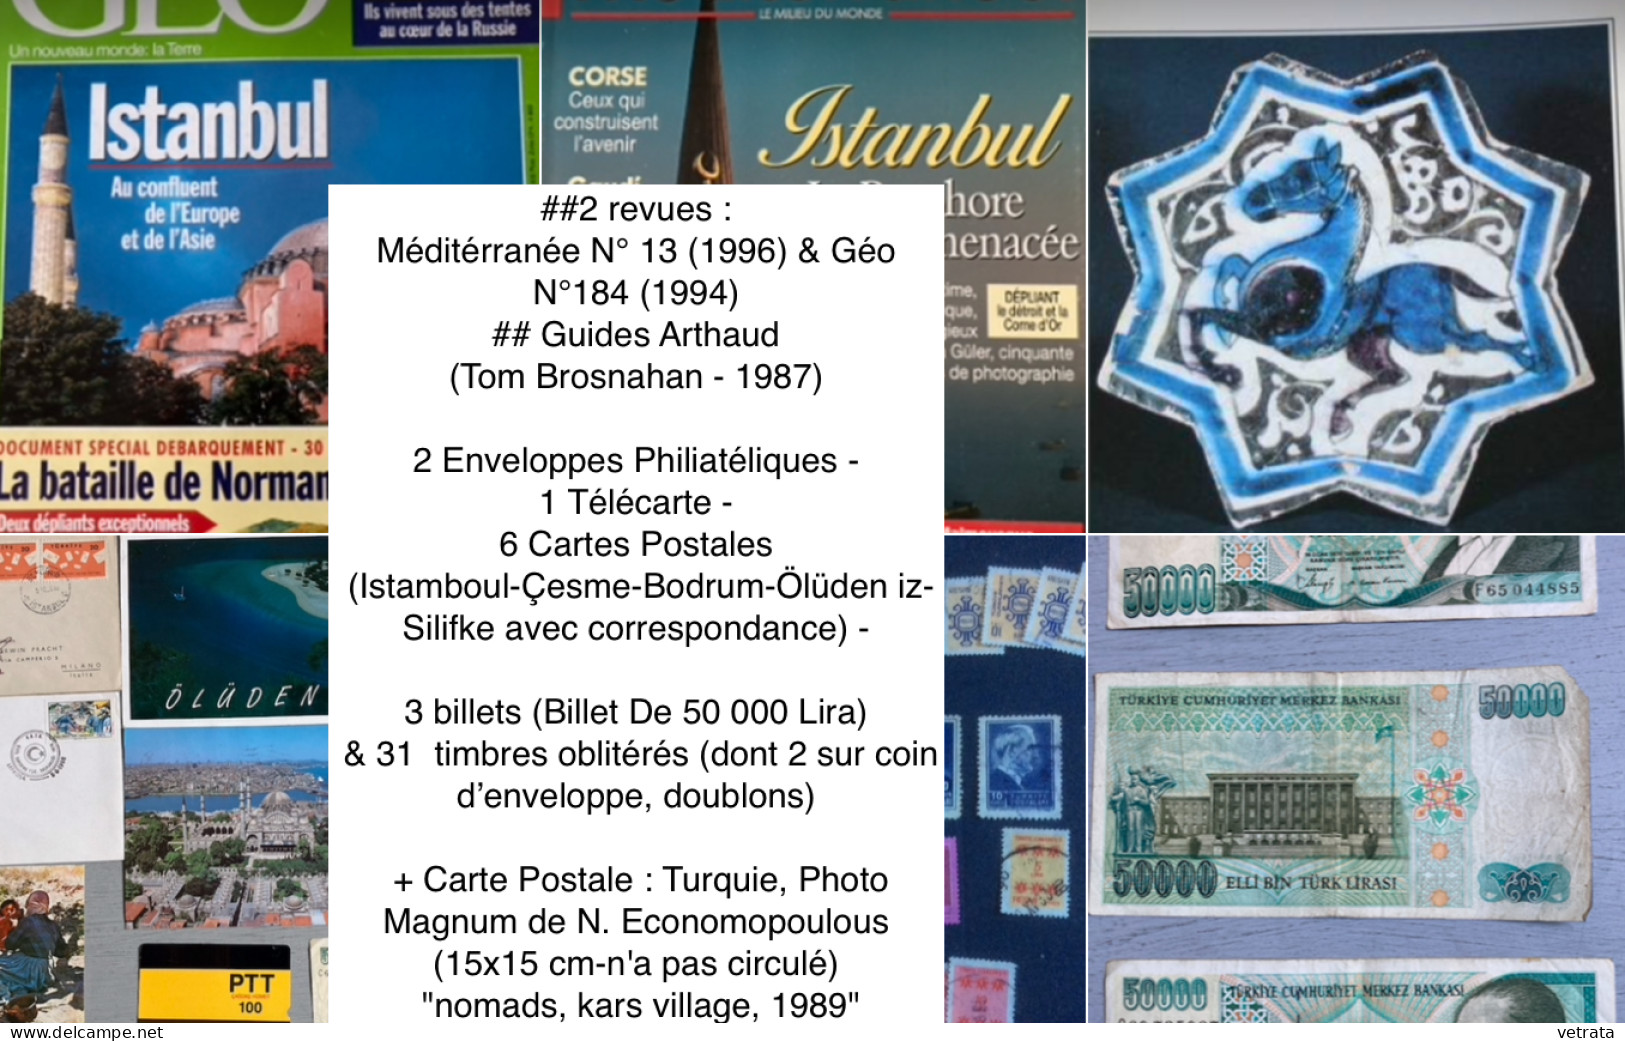 TURQUIE : 2 Revues /1 Guide /7 Cartes Postales/2 Enveloppes/1 Télécarte/3 Billets & 31 Timbres ///   (envoi uniquement p